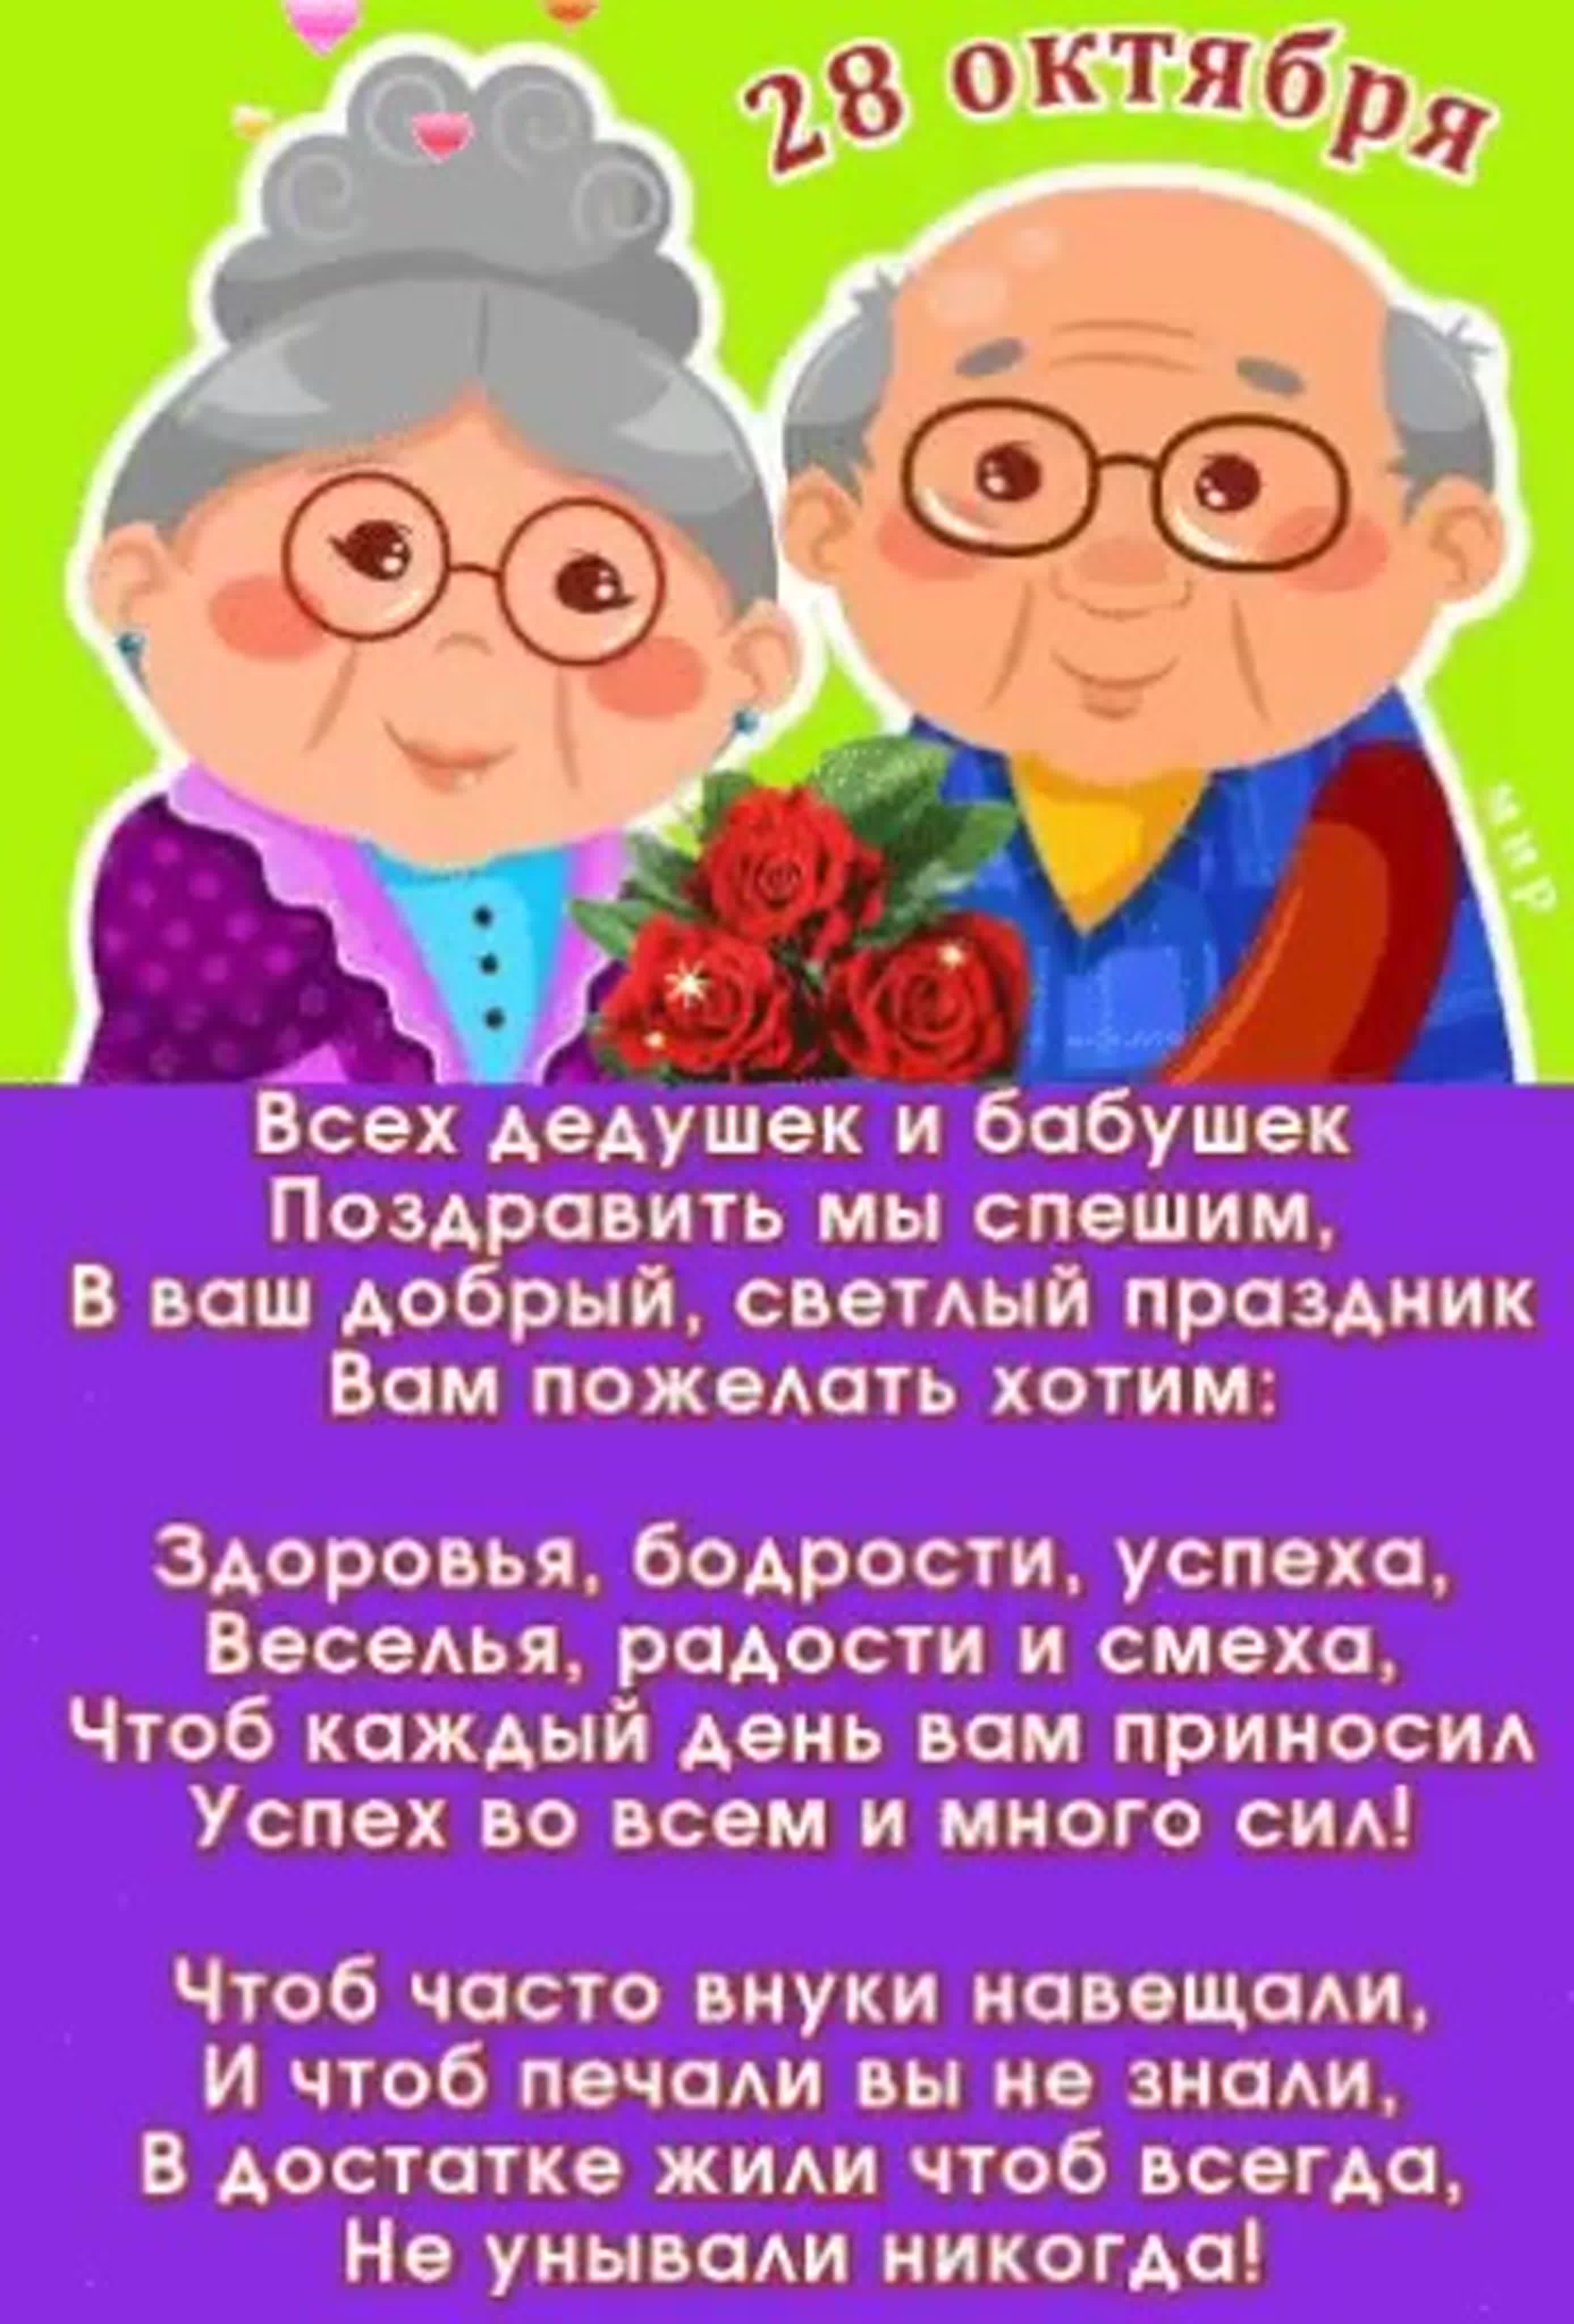 Поздравление от деда бабушке